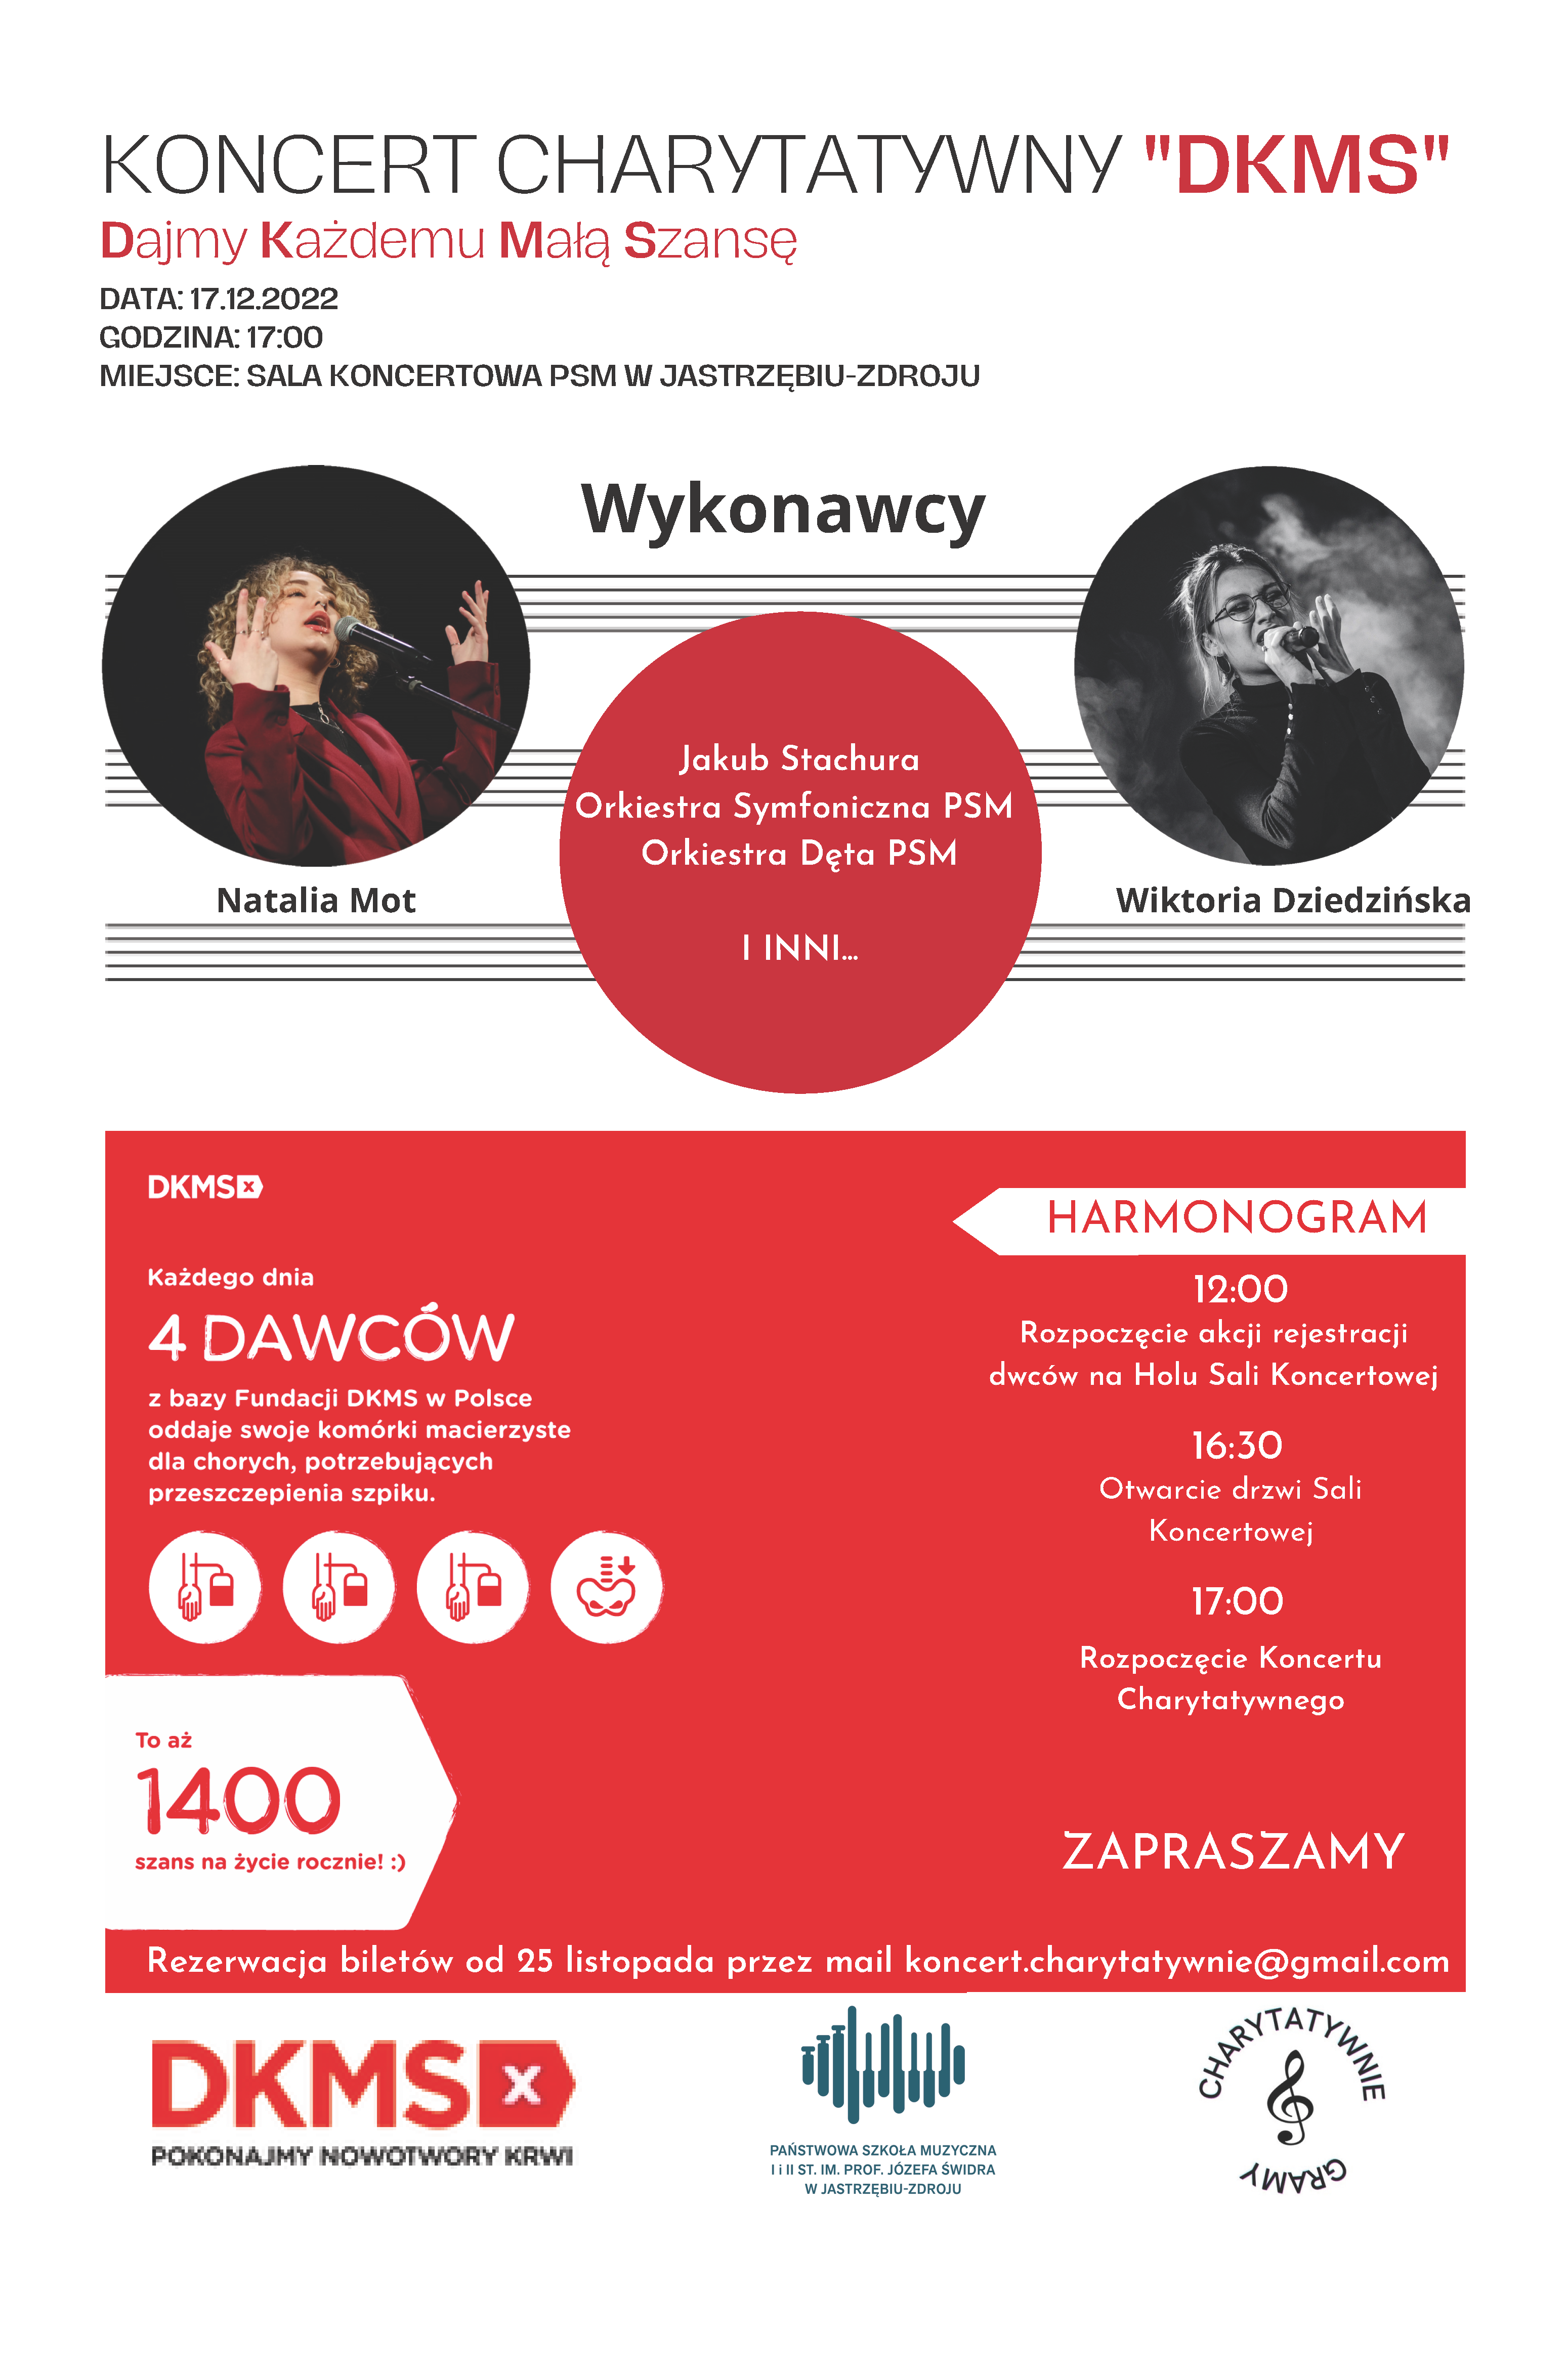 Zaproszenie na koncert charytatywny DKMS 17.12.2022 17:00 Obrazek przedstawia białe tło na którym w okręgach znajdują się informacje o wykonawcach oraz ich zdjęcia.